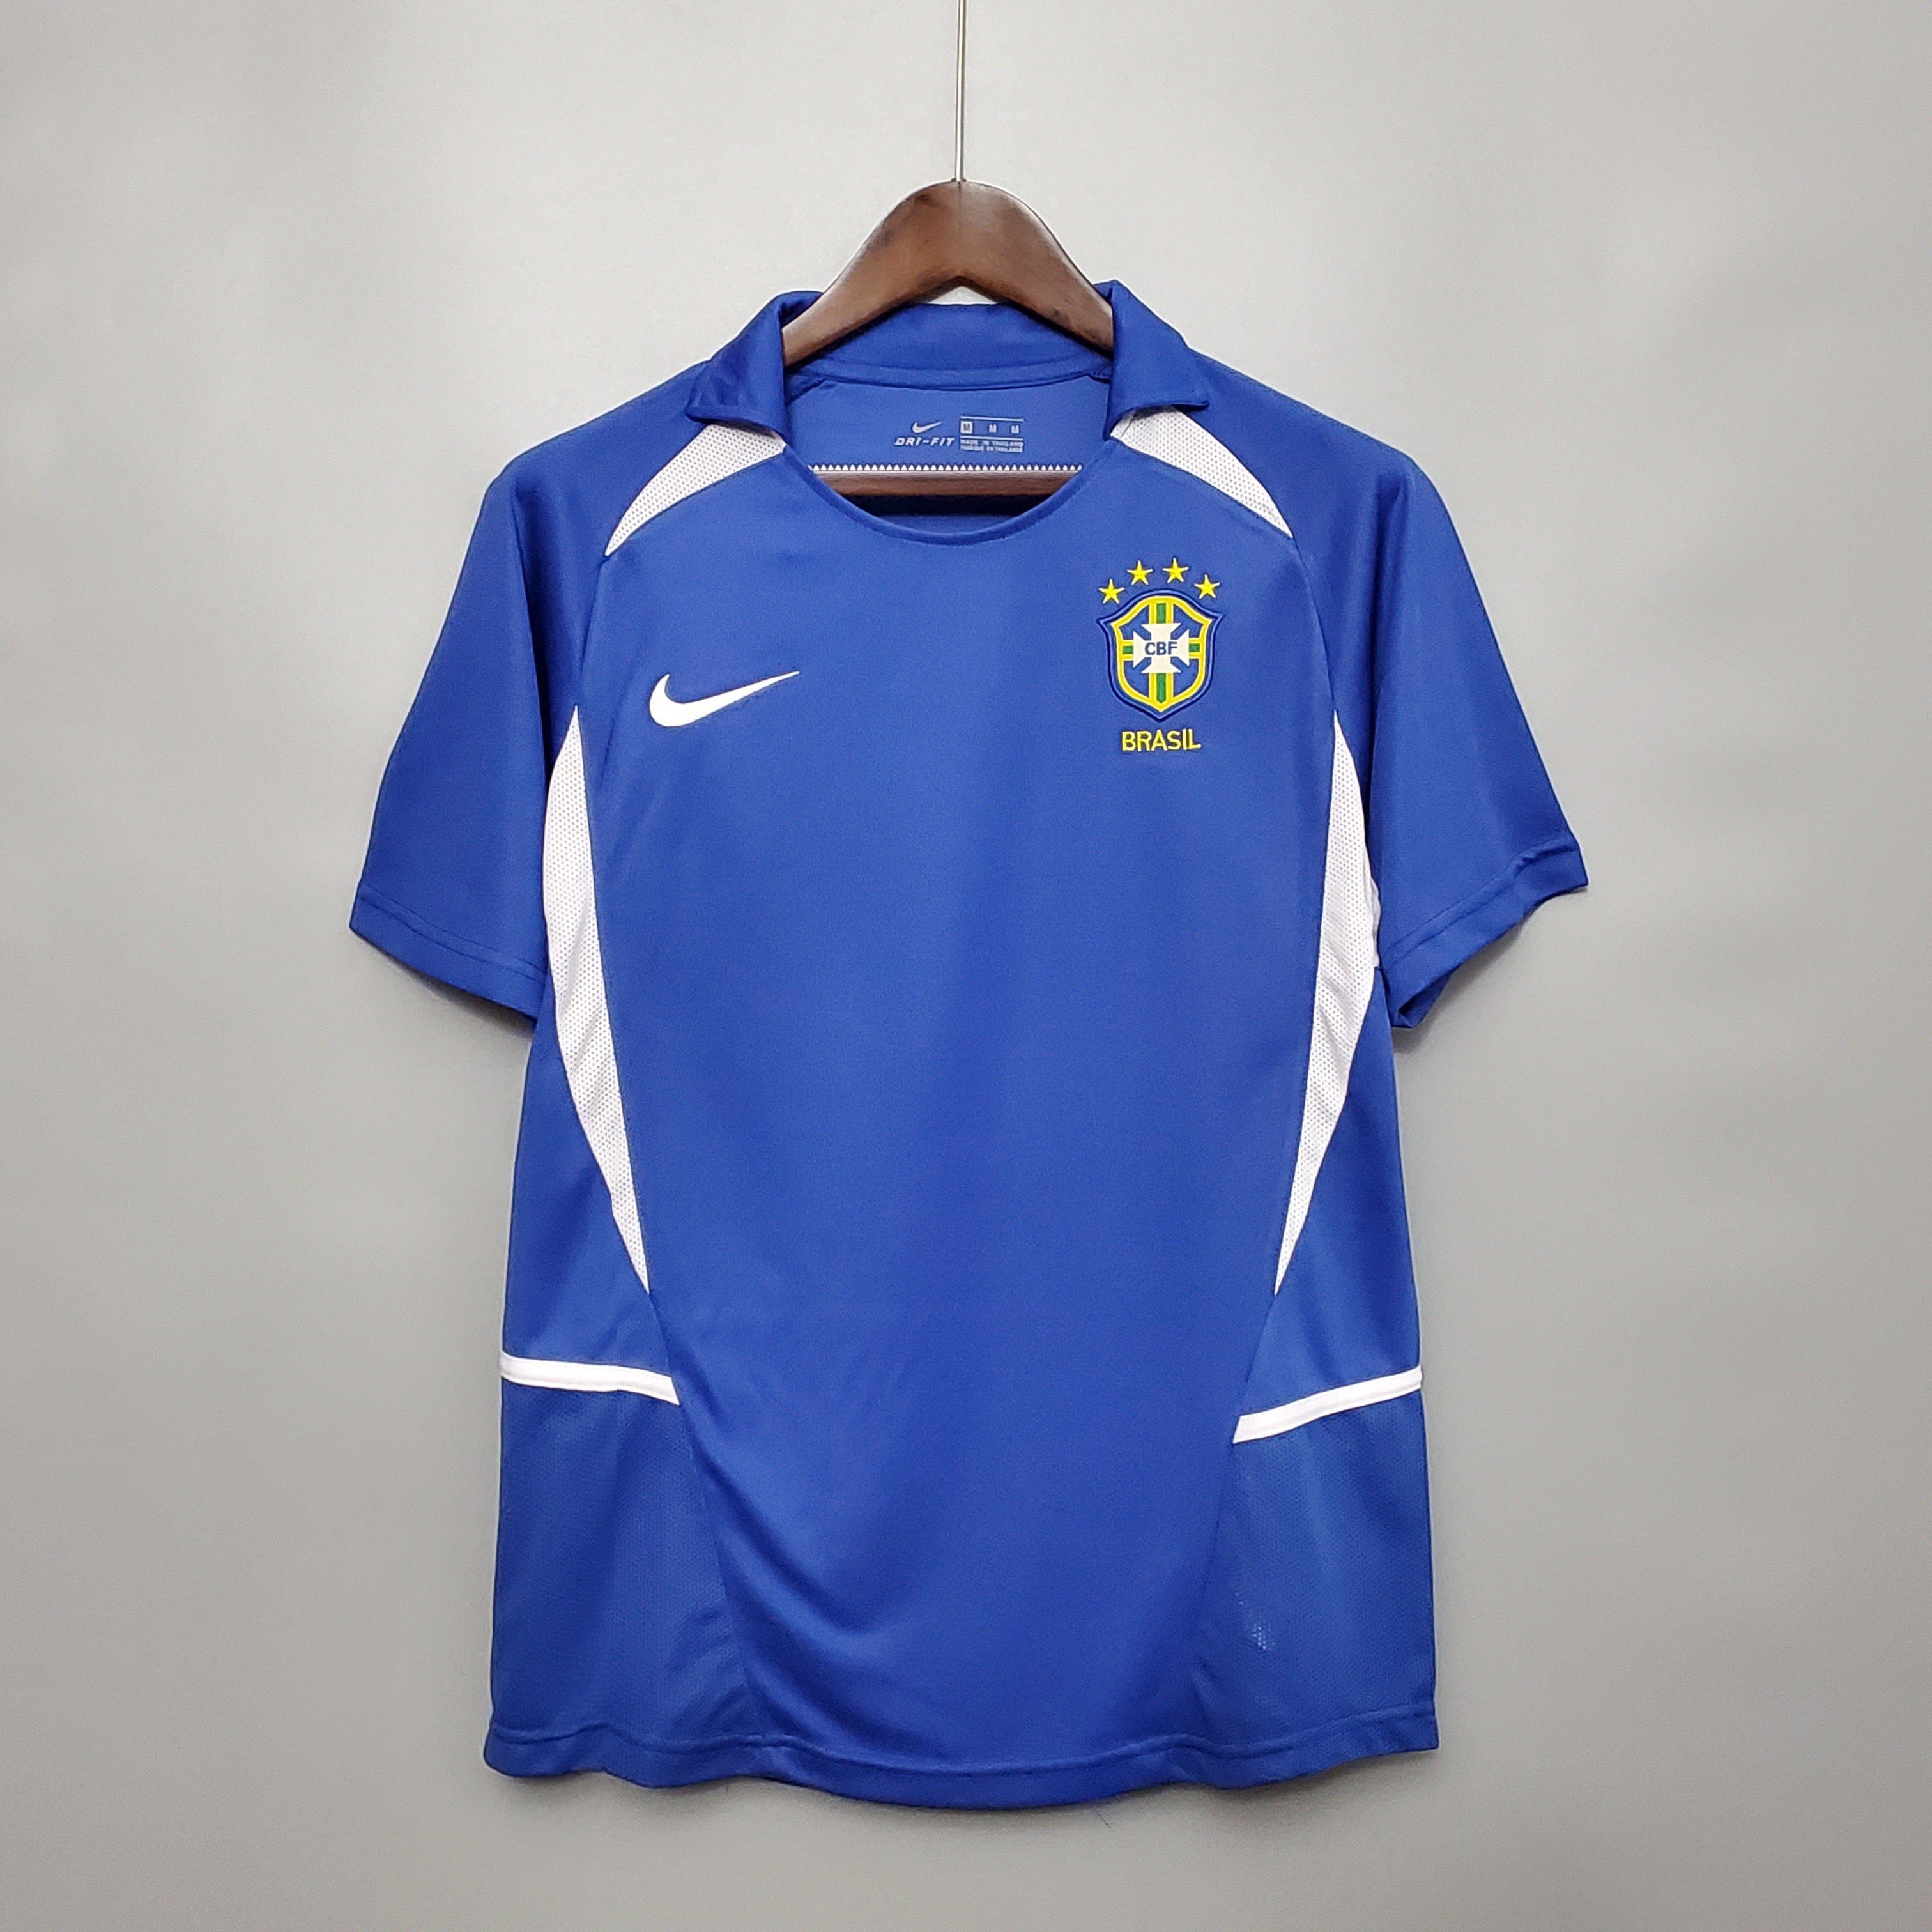 Brazil 2002 World Cup Away Jersey